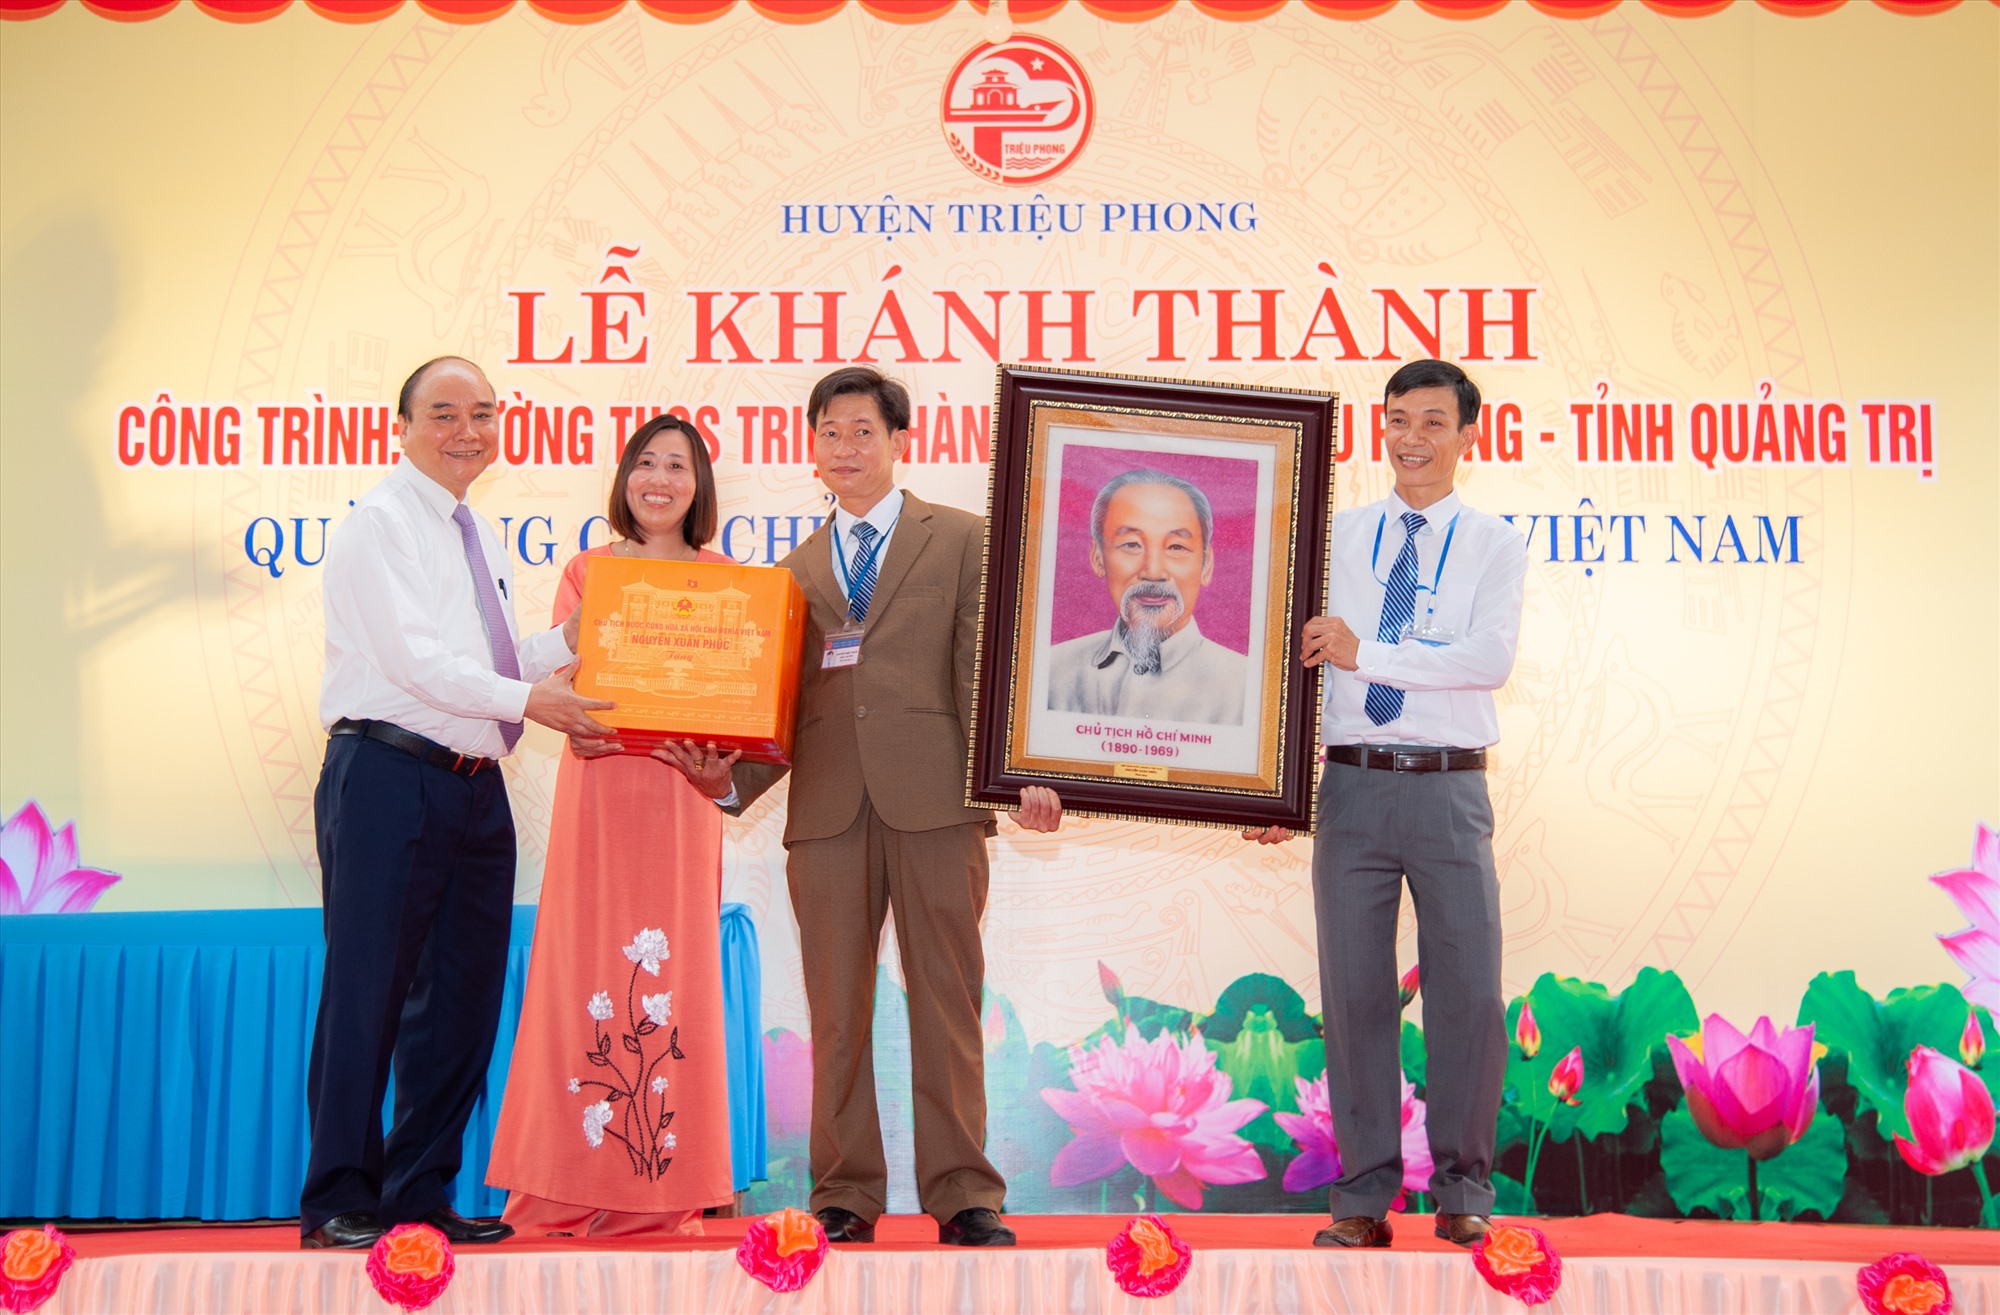 Chủ tịch nước Nguyễn Xuân Phúc tặng ảnh Chủ tịch Hồ Chí Minh cùng nhiều phần quà cho Trường THCS Triệu Thành - Ảnh: Trần Tuyền